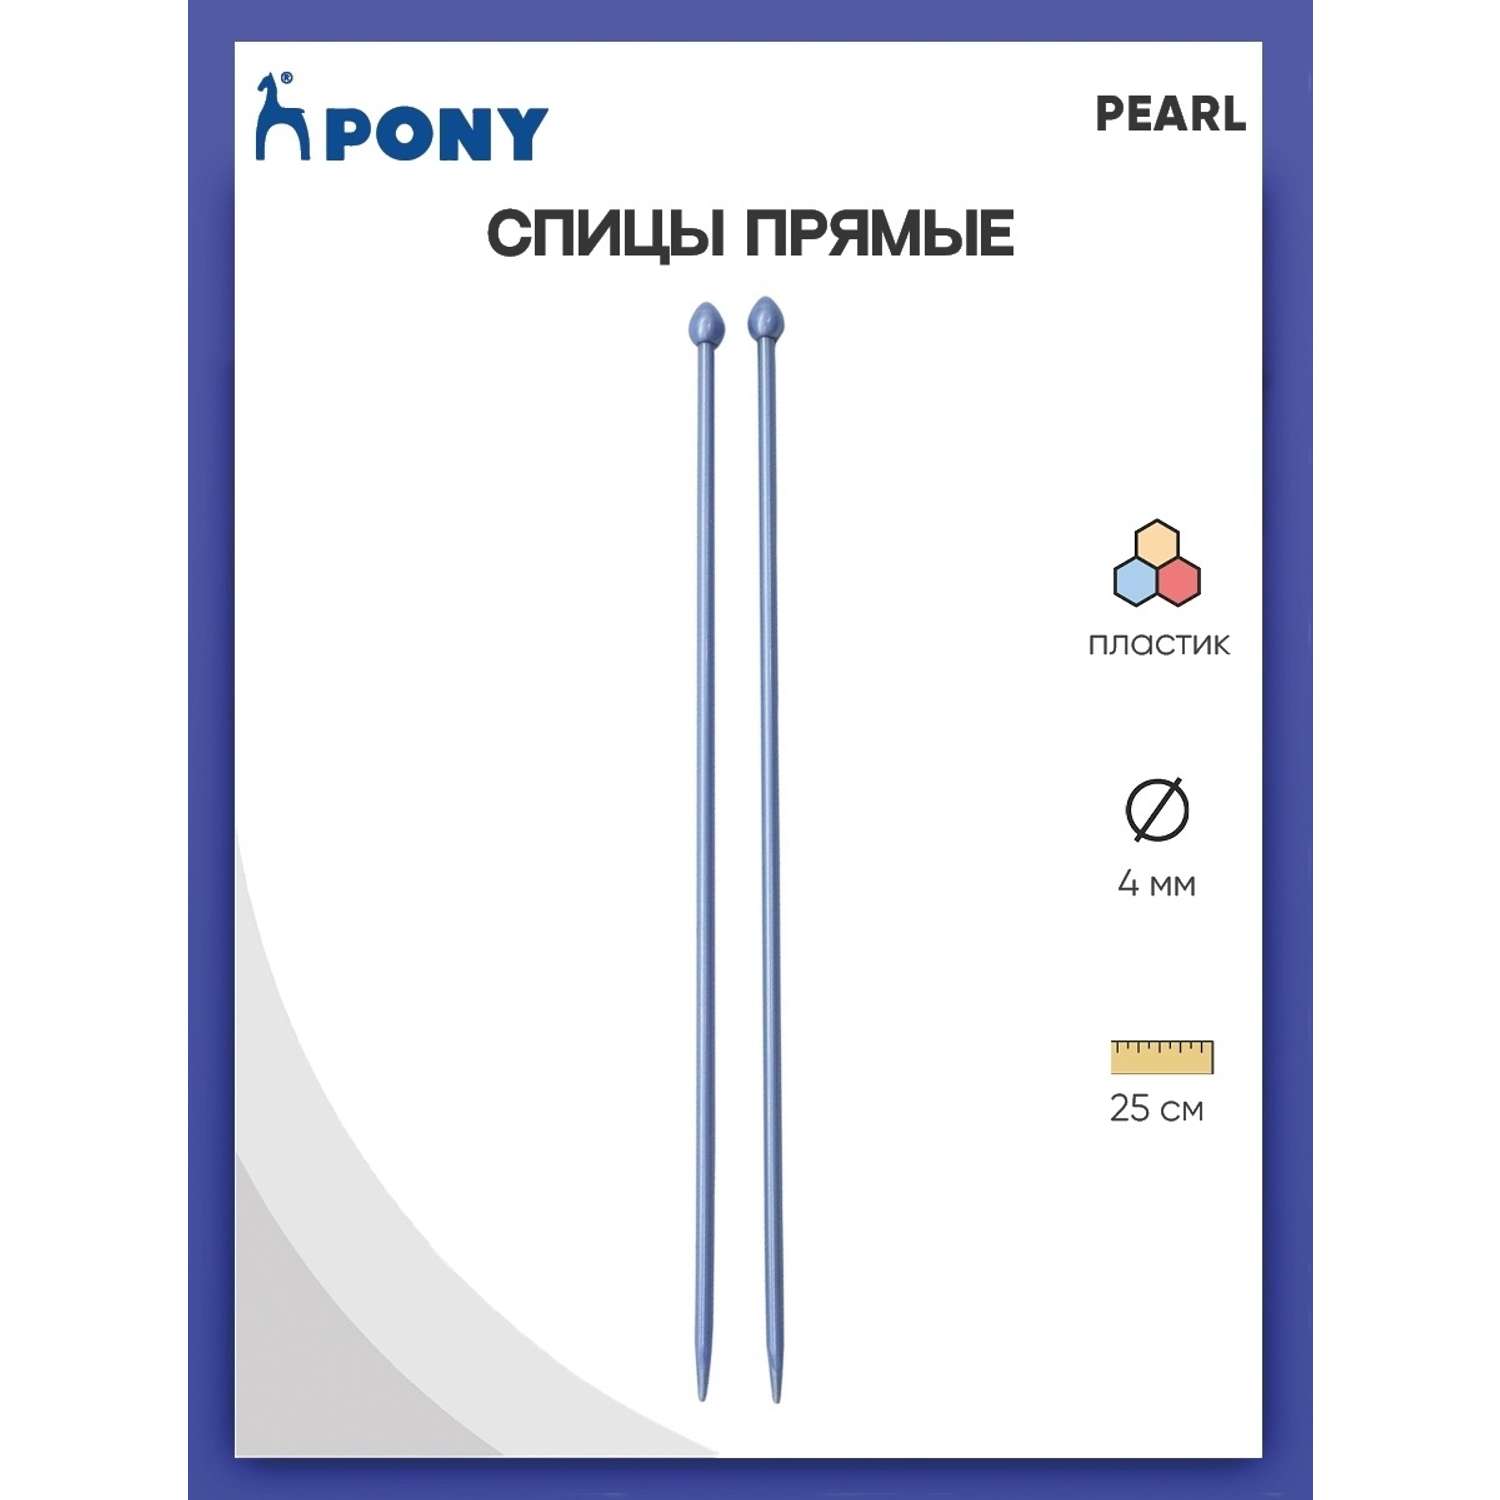 Спицы прямые Pony пластиковые для начинающих PEARL 4 мм 25 см фиолетовые 31628 - фото 1